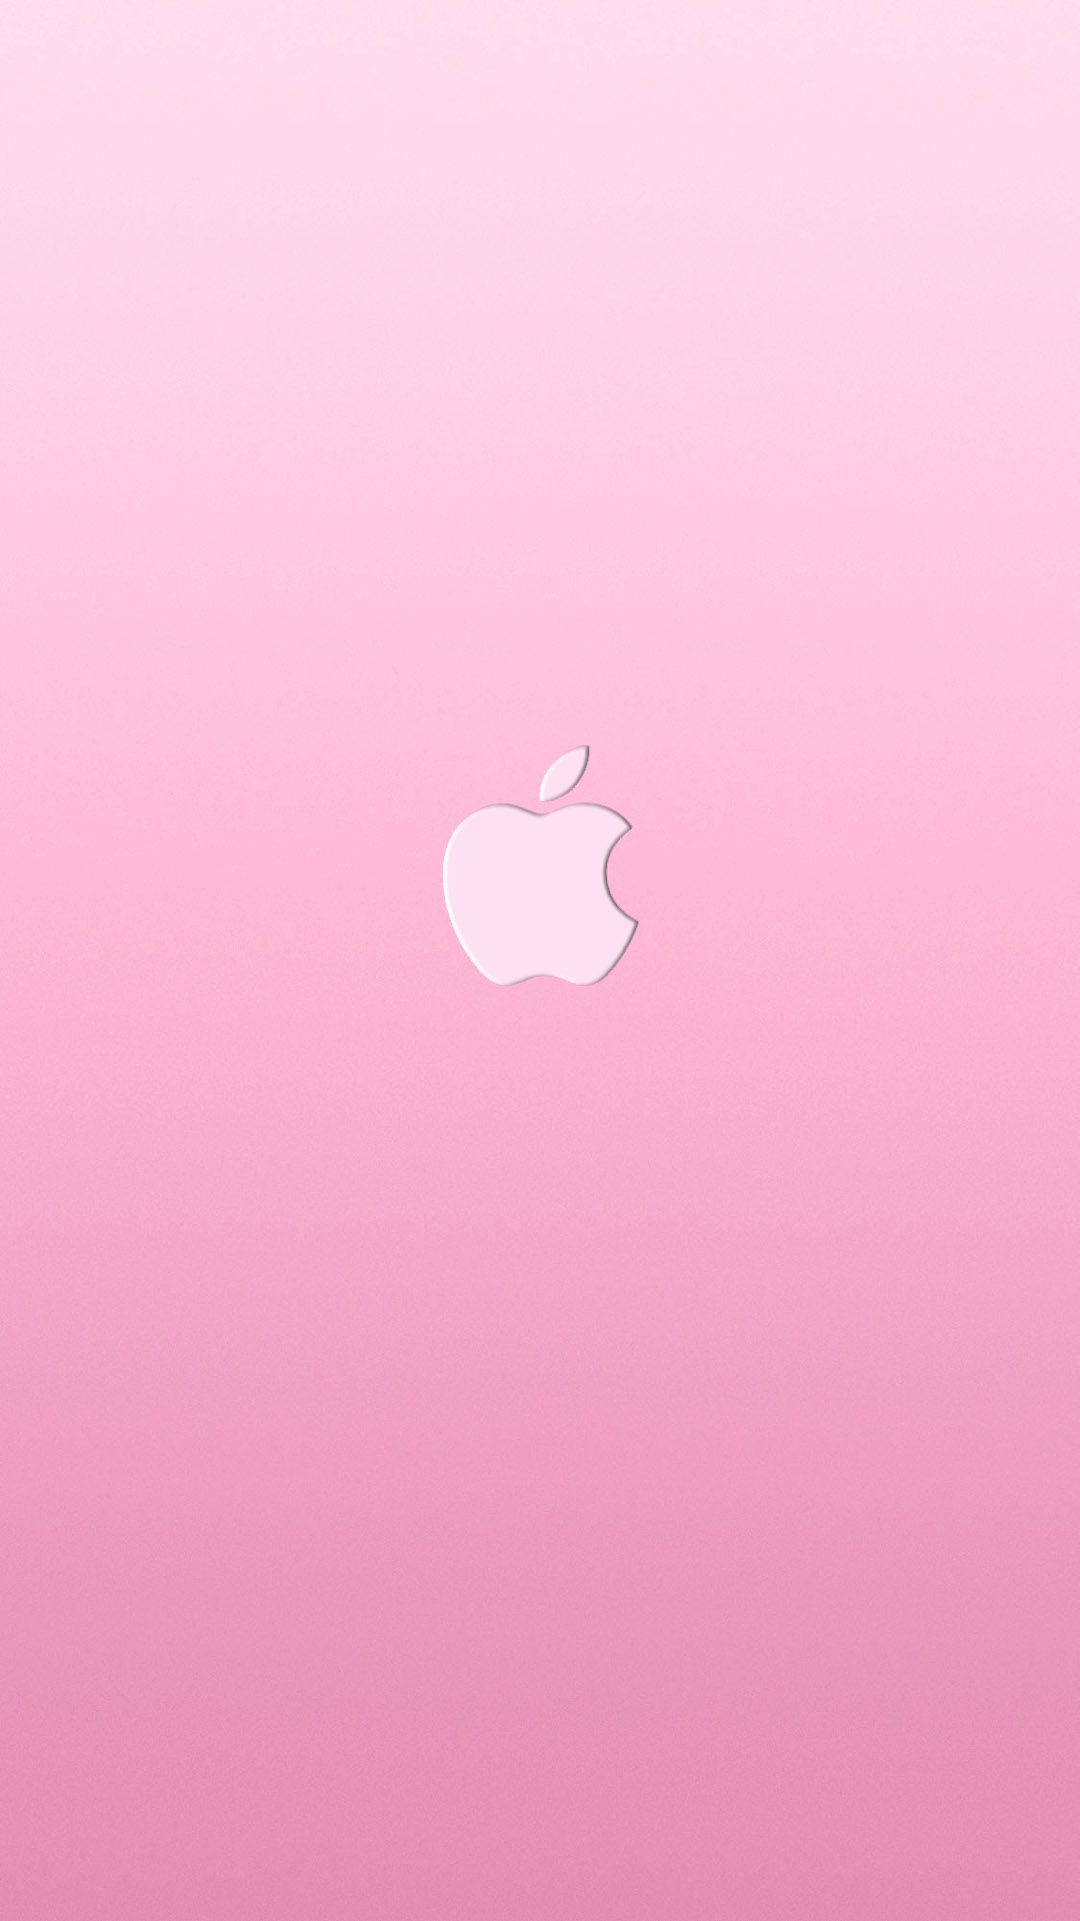 iPhone Duvar Kağıtları. Apple wallpaper, Apple logo wallpaper iphone, Apple wallpaper iphone